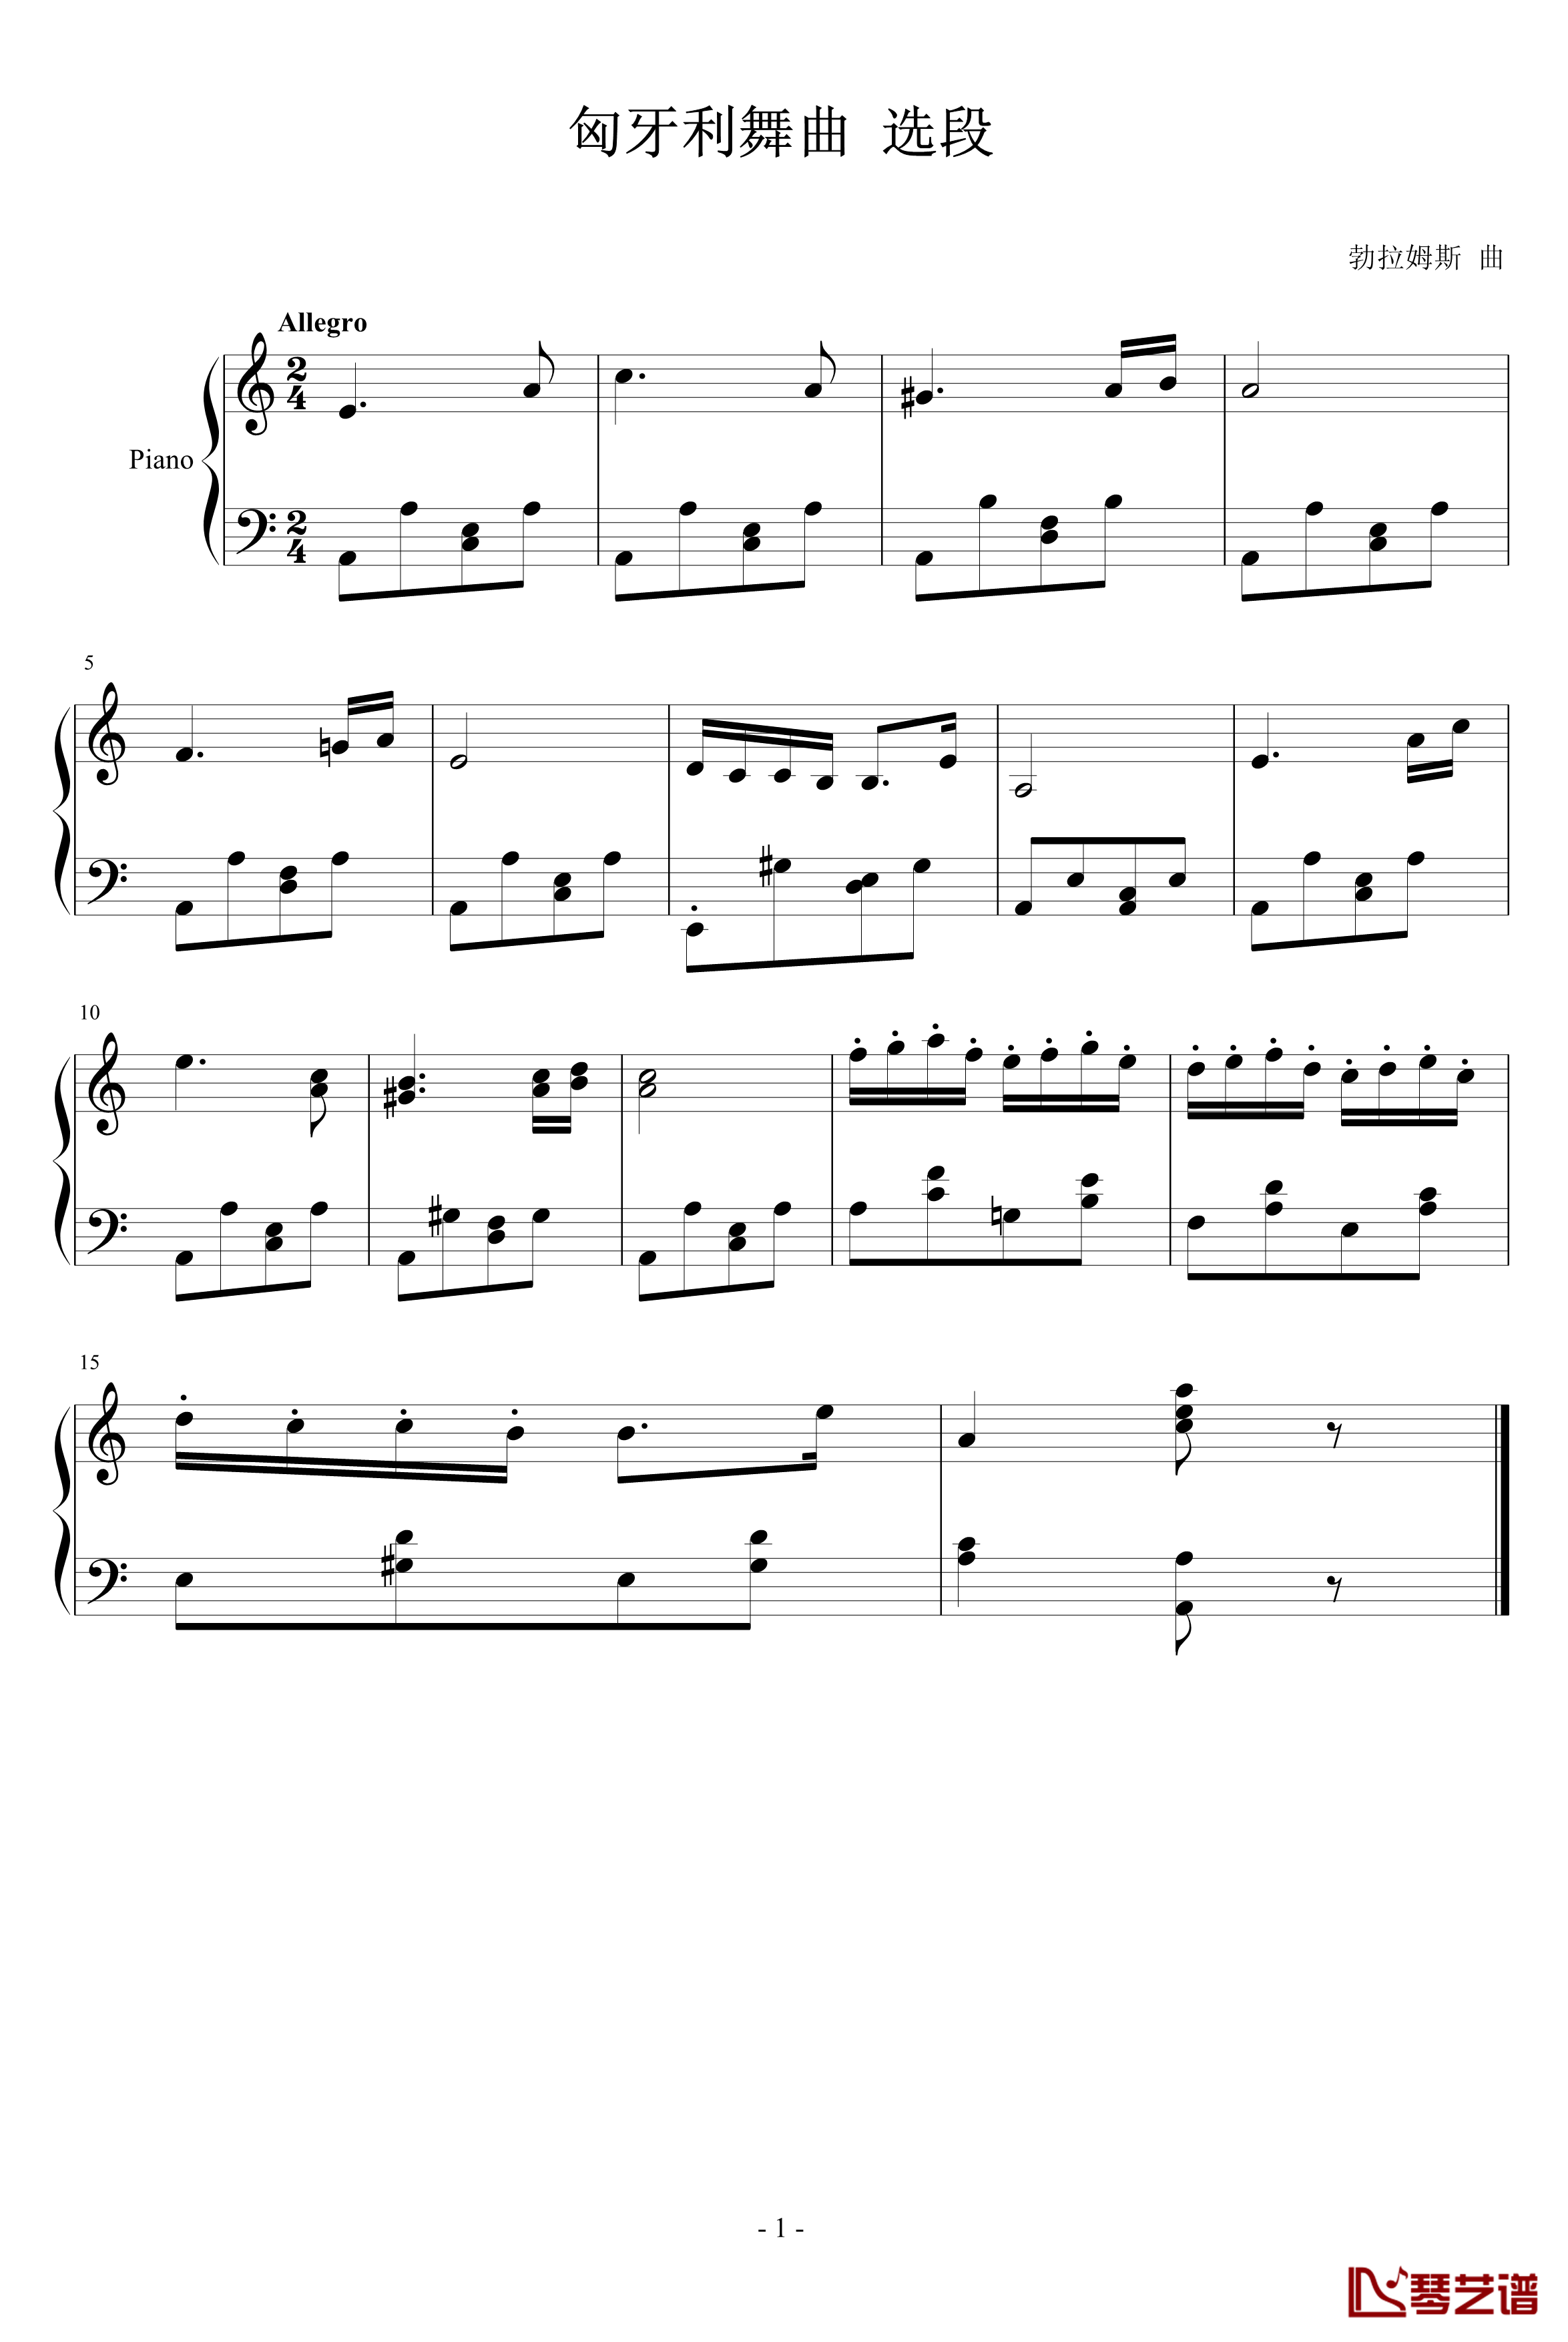 匈牙利舞曲节选钢琴谱-勃拉姆斯-Brahms1